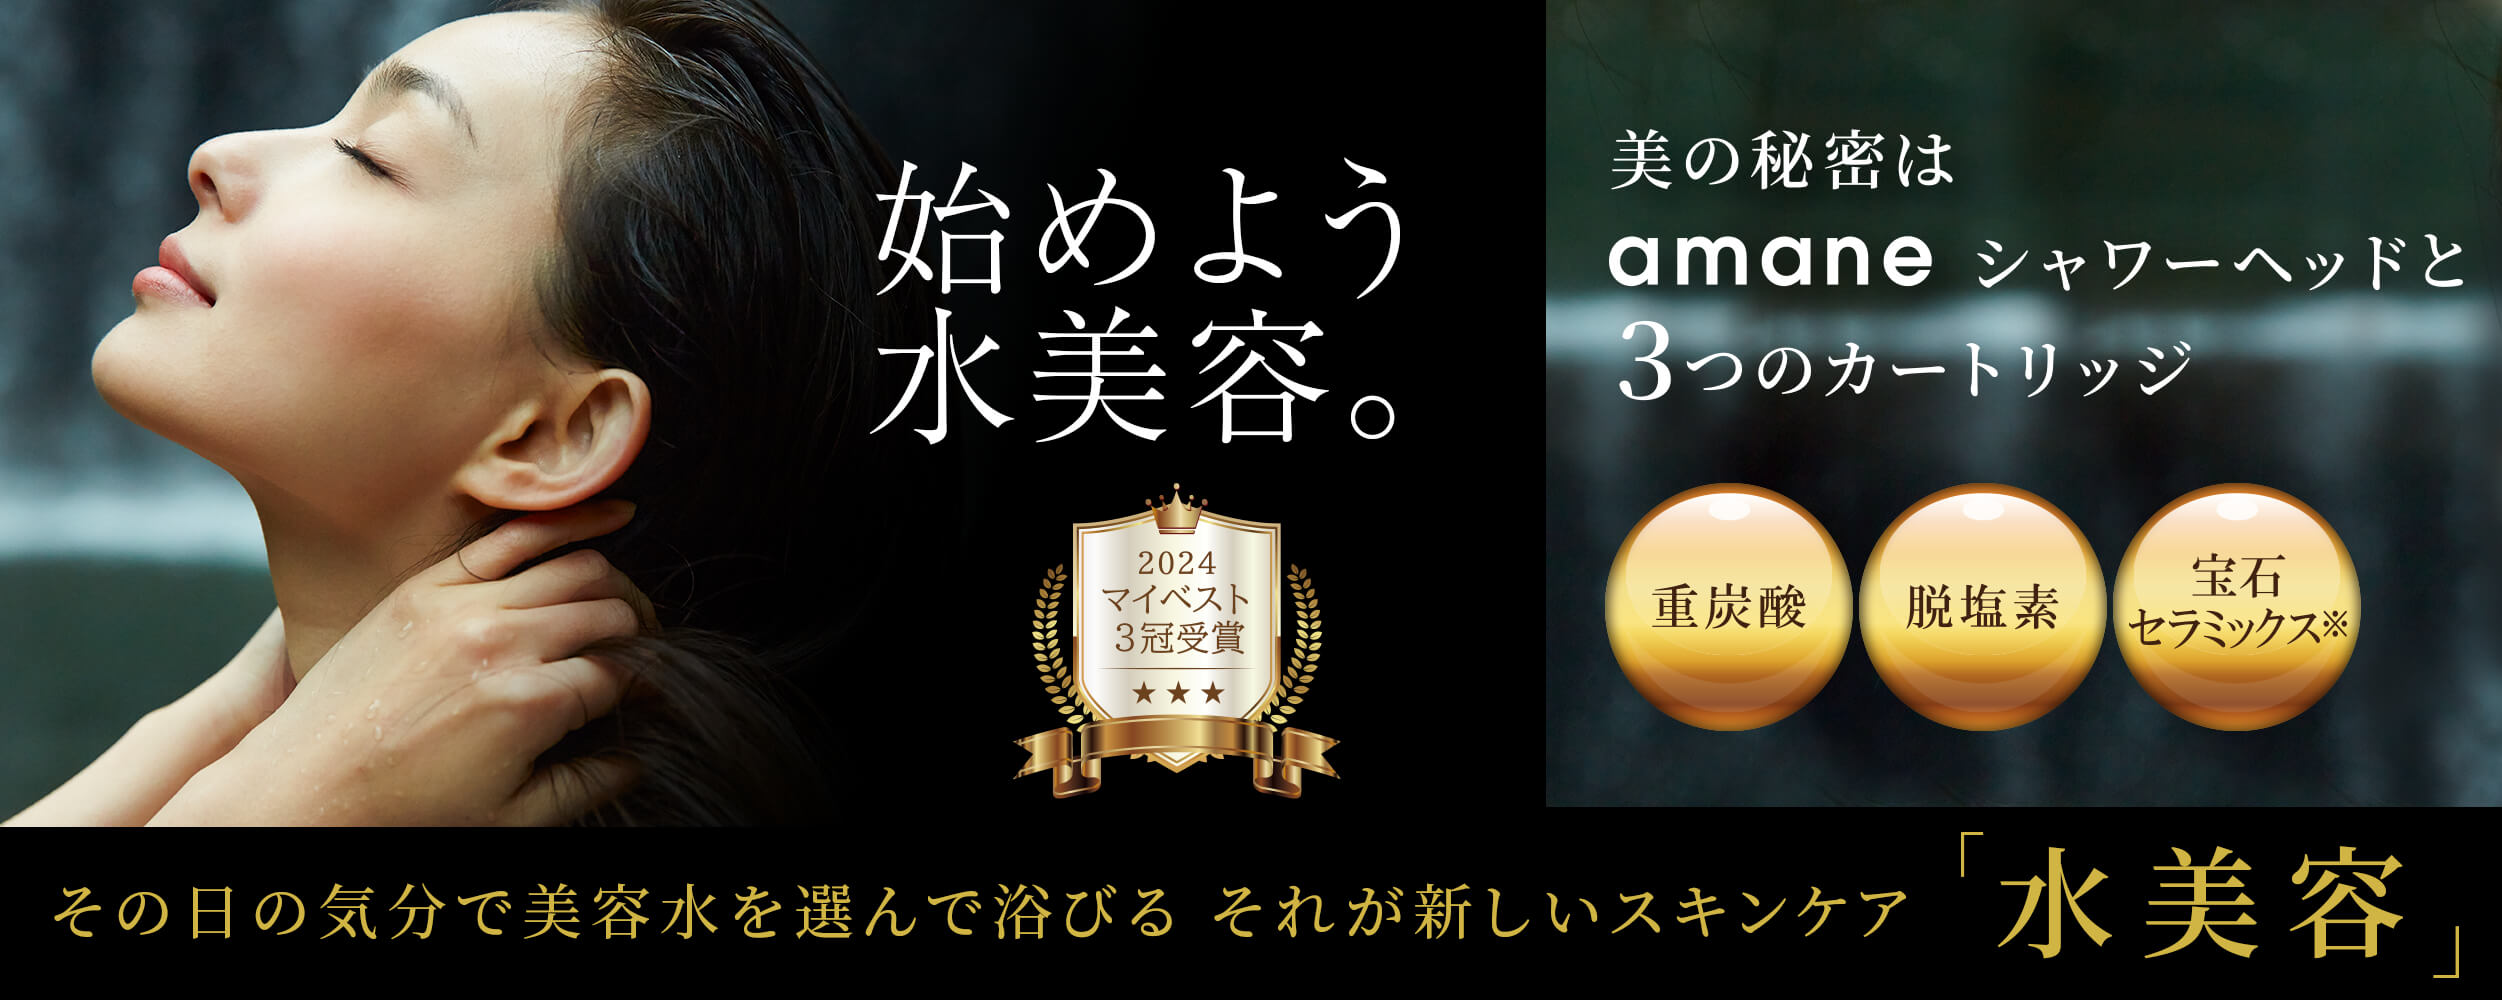 オムコ東日本公式オンラインショップ Amane 天音 あまね シャワーヘッド